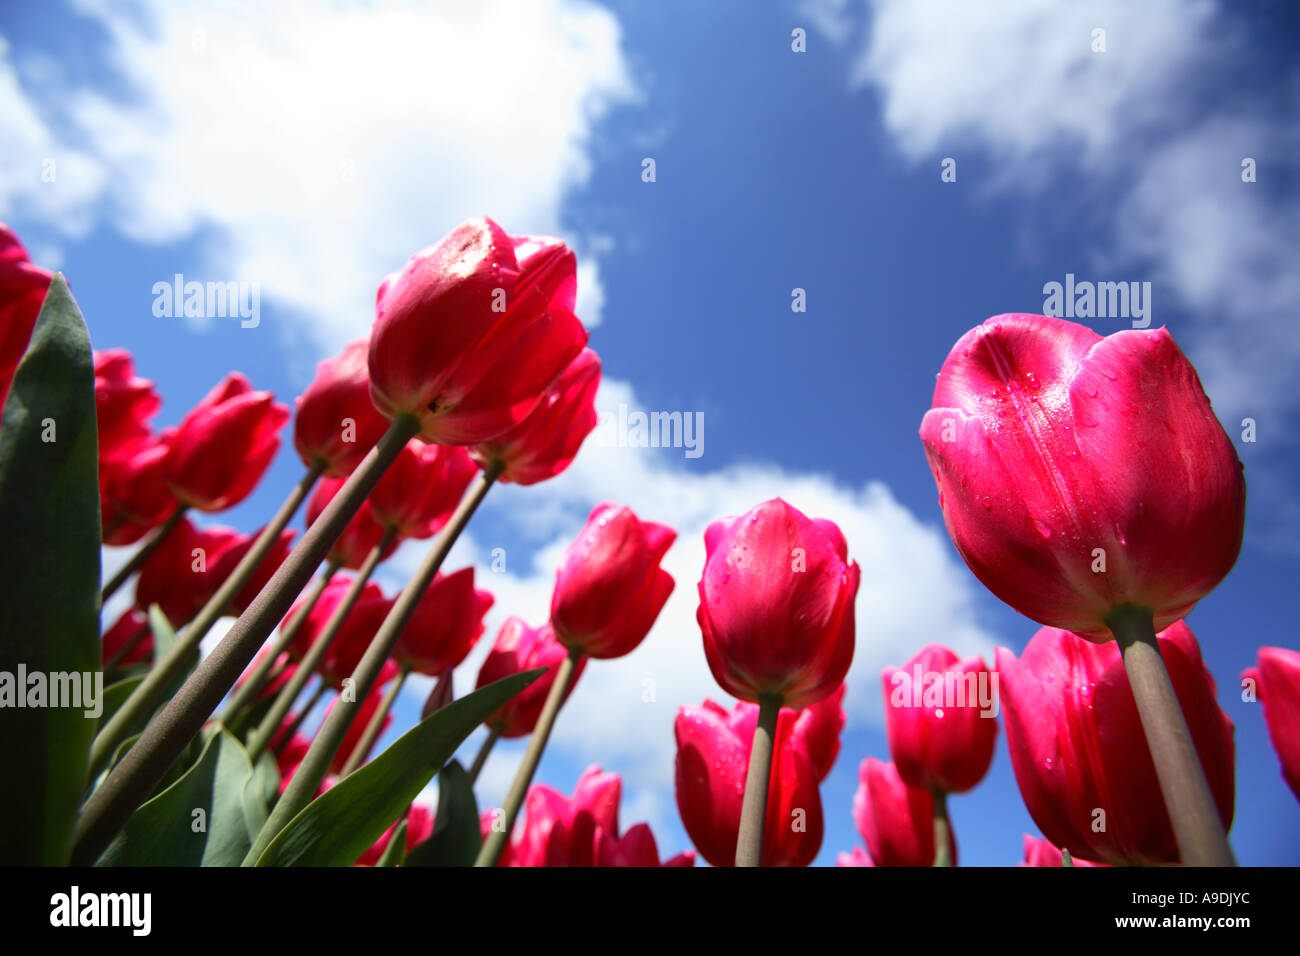 Basso angolo vista di rosa luminoso tulipani contro un cielo blu con nuvole. Foto Stock